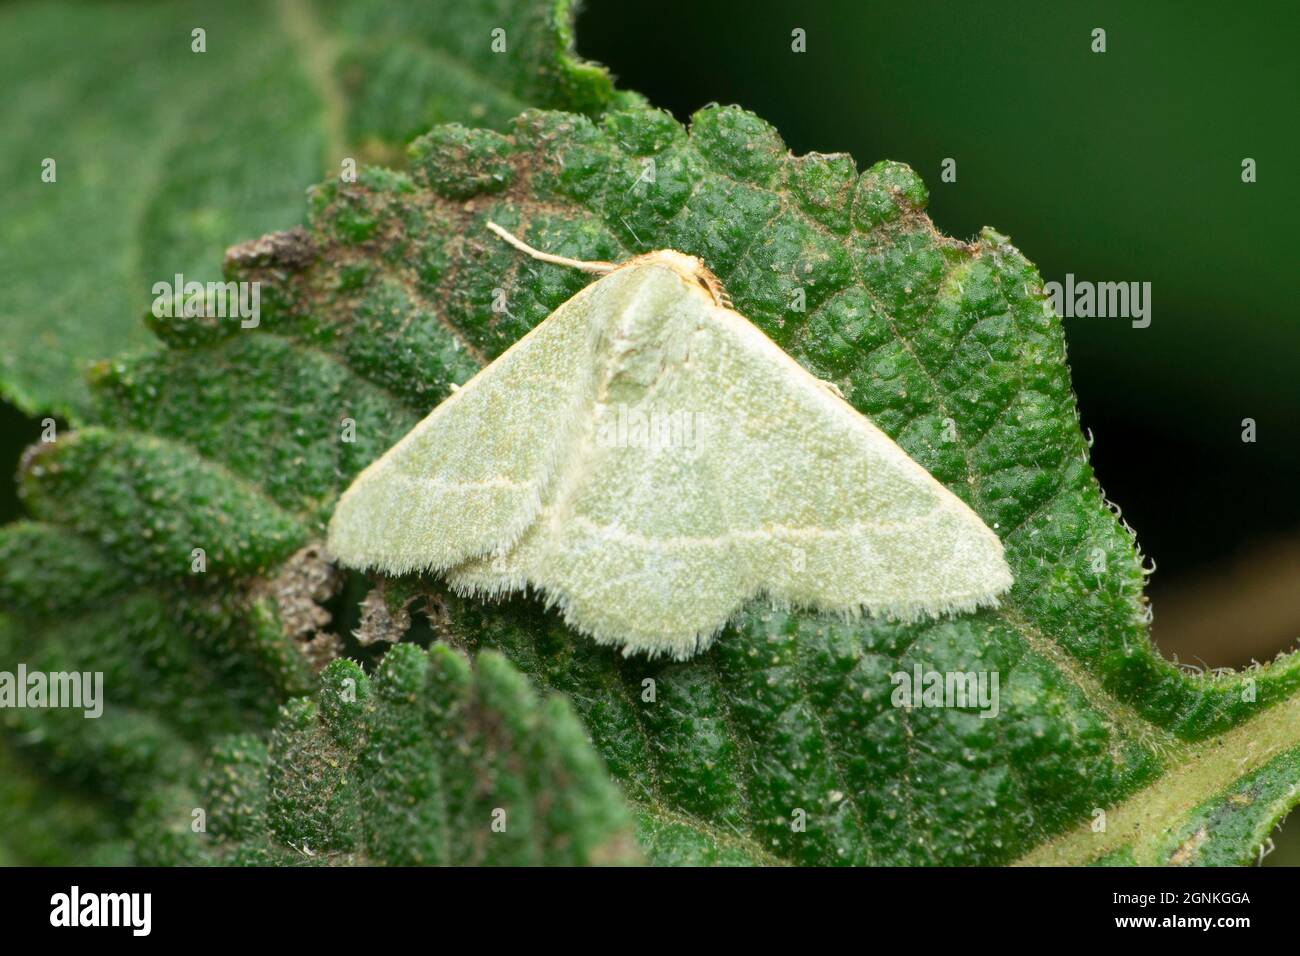 Satin moth, Leucoma salicis, Satara, Maharashtra, India Stock Photo